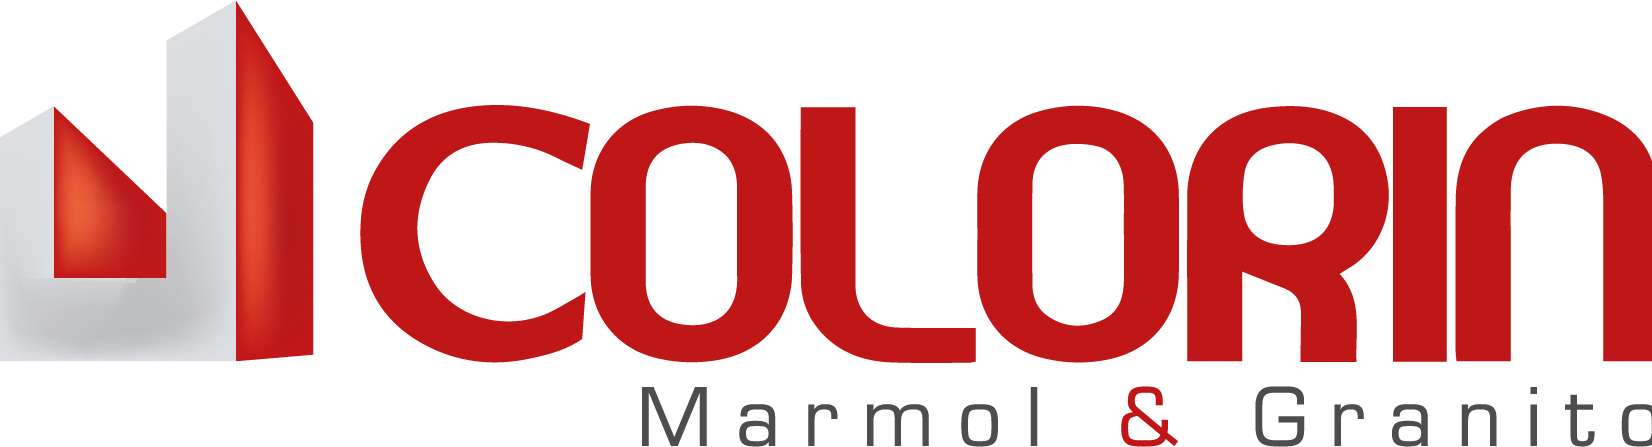 Marmolera Colorin 